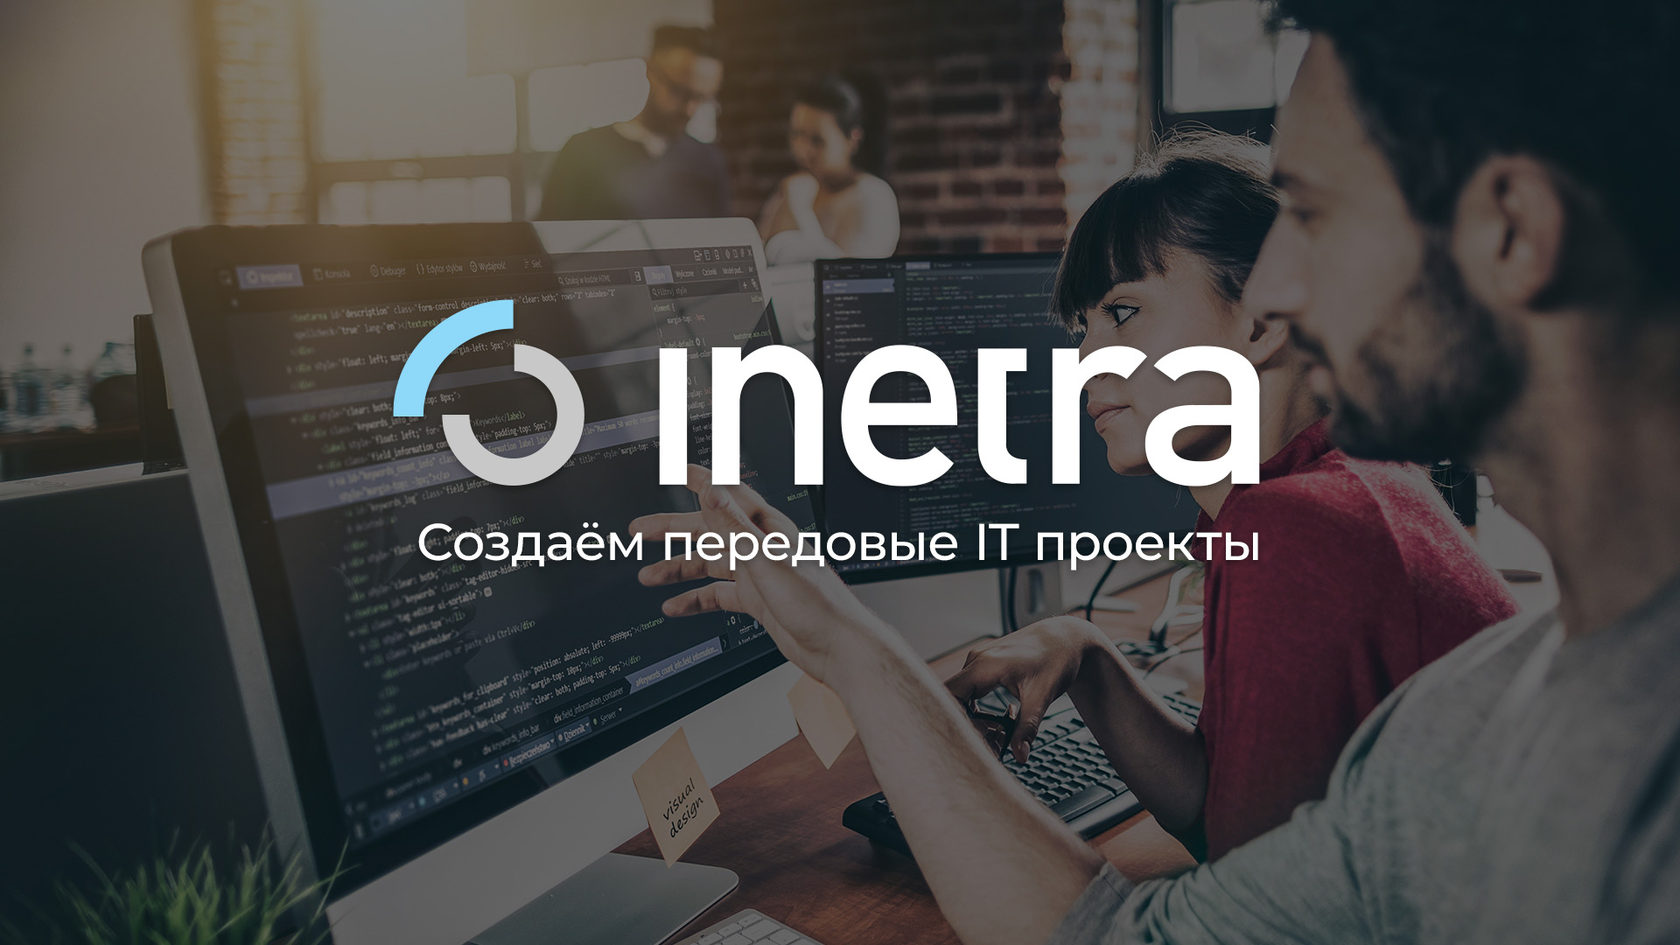 Инетра - продуктовая IT-компания, разработавшая такие проекты как Peers.TV, Likemeal, CN.RU, DRON.digital, Поток и Простор.